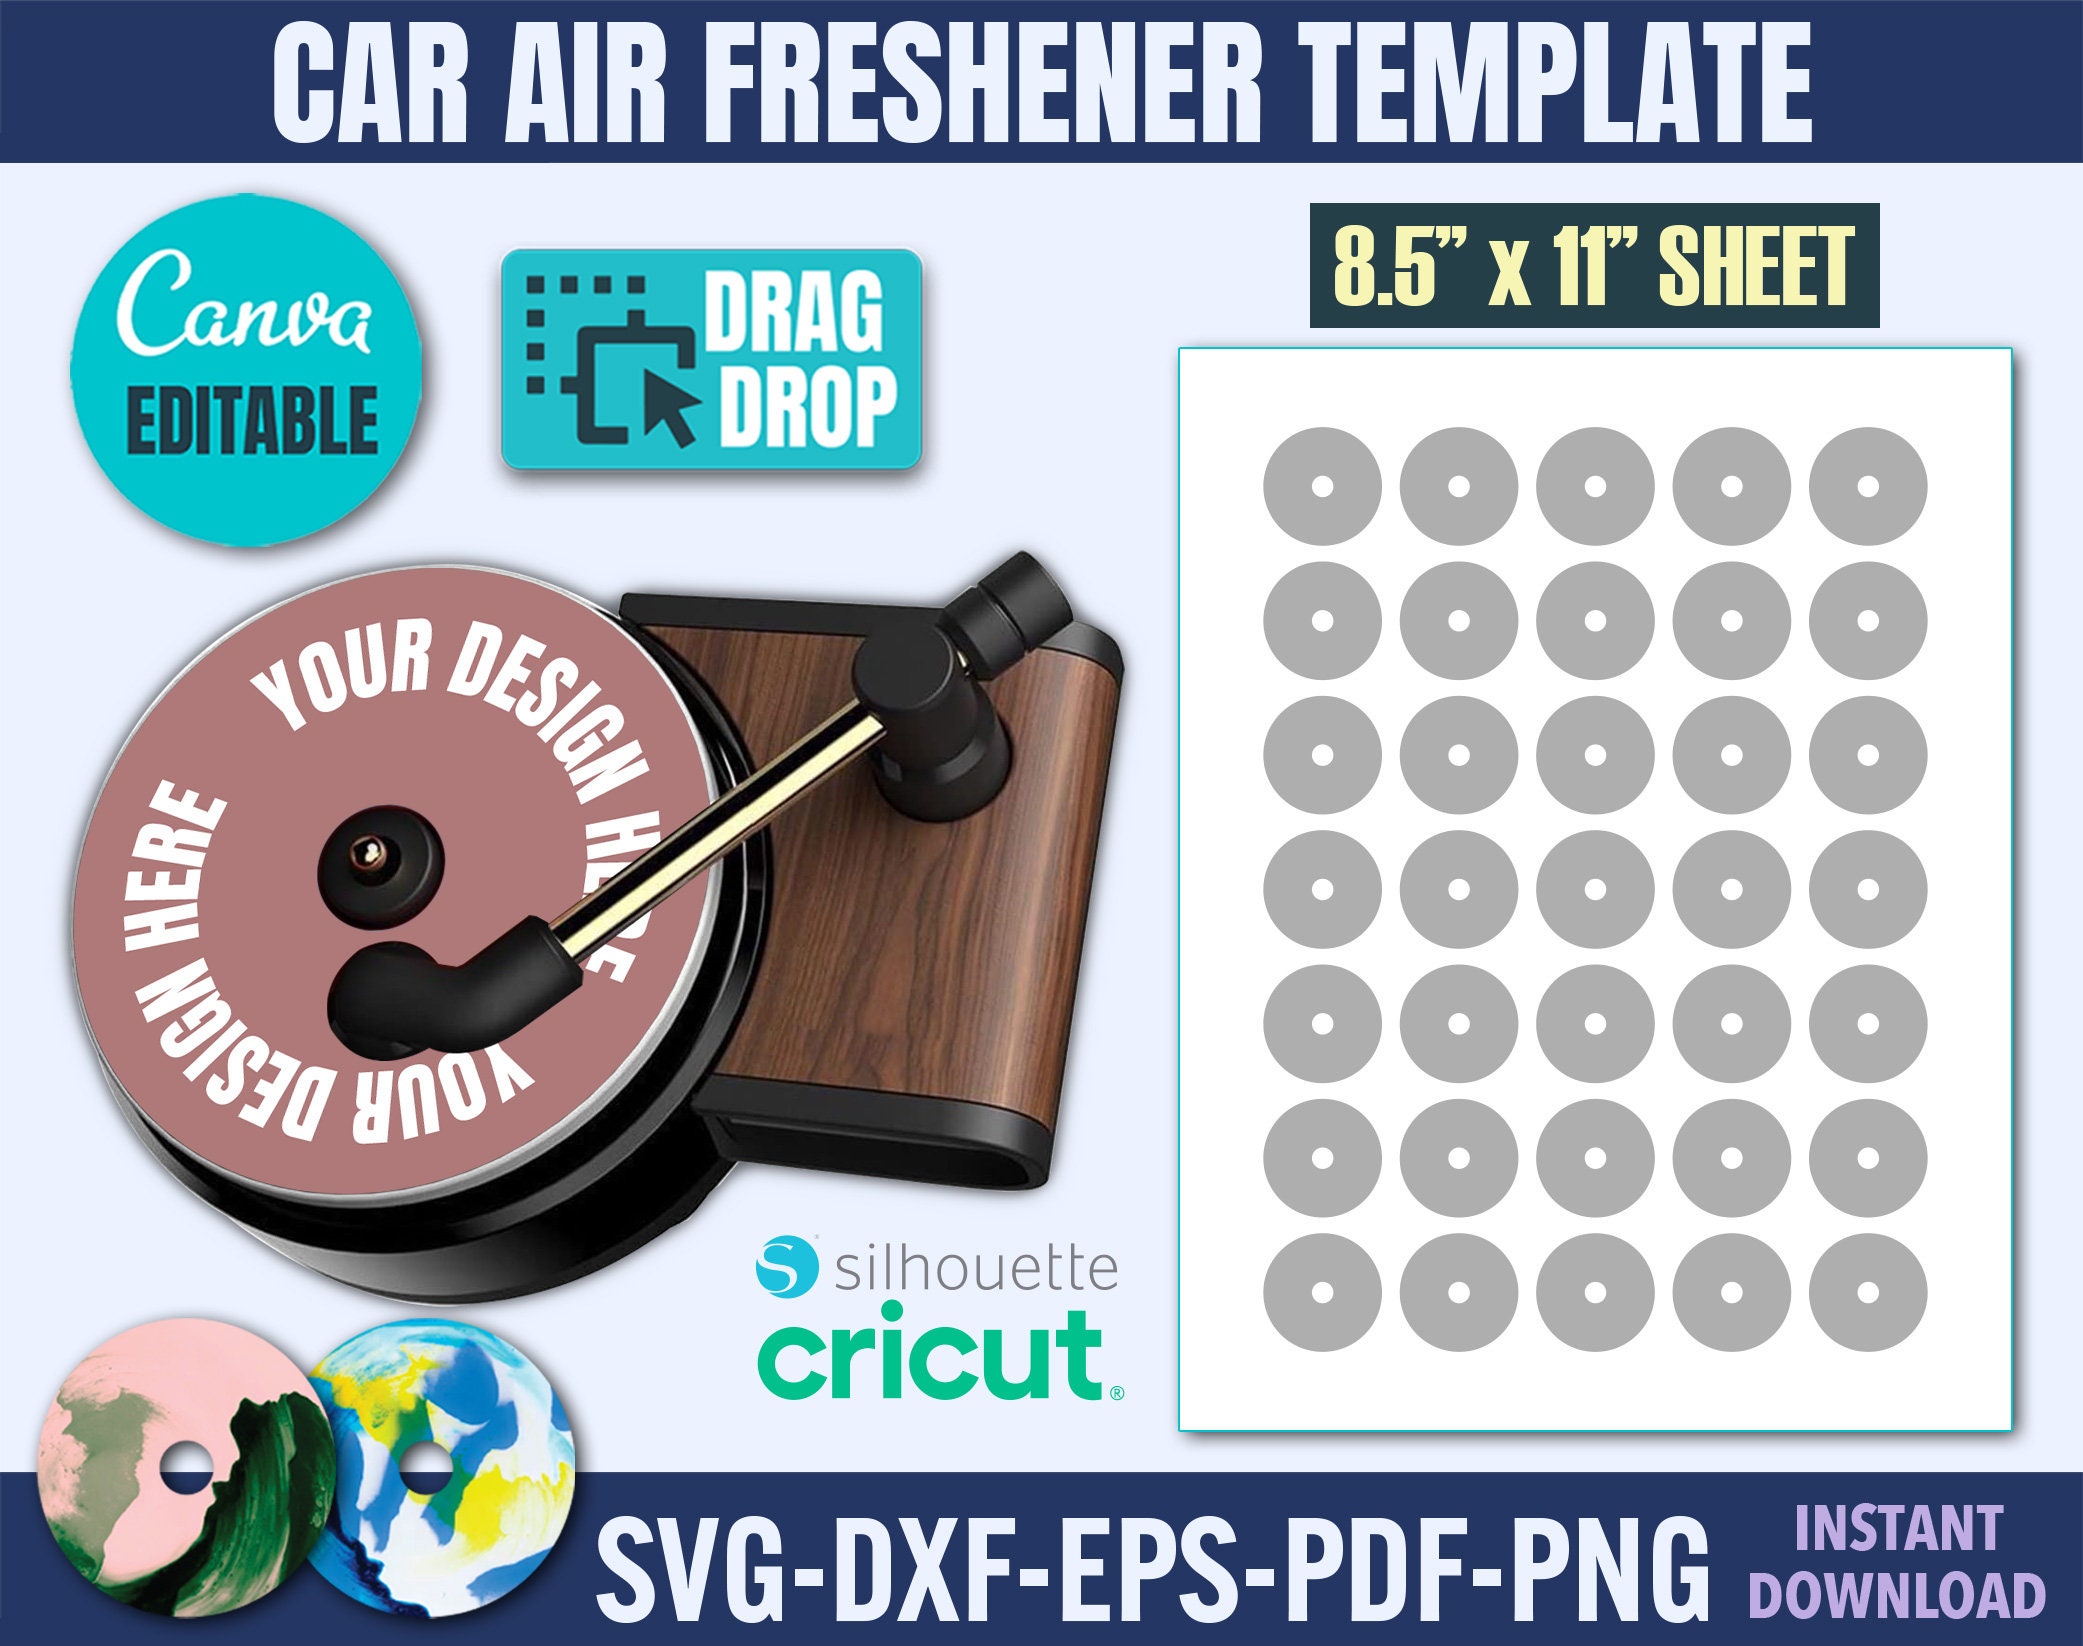 Drucken Sie Ihr Bild Auto Lufterfrischer Entworfen als Vintage  Plattenspieler Stilvolle Möglichkeit, Ihr Auto riechend zu halten Schöne  und frische Geschenkidee - .de